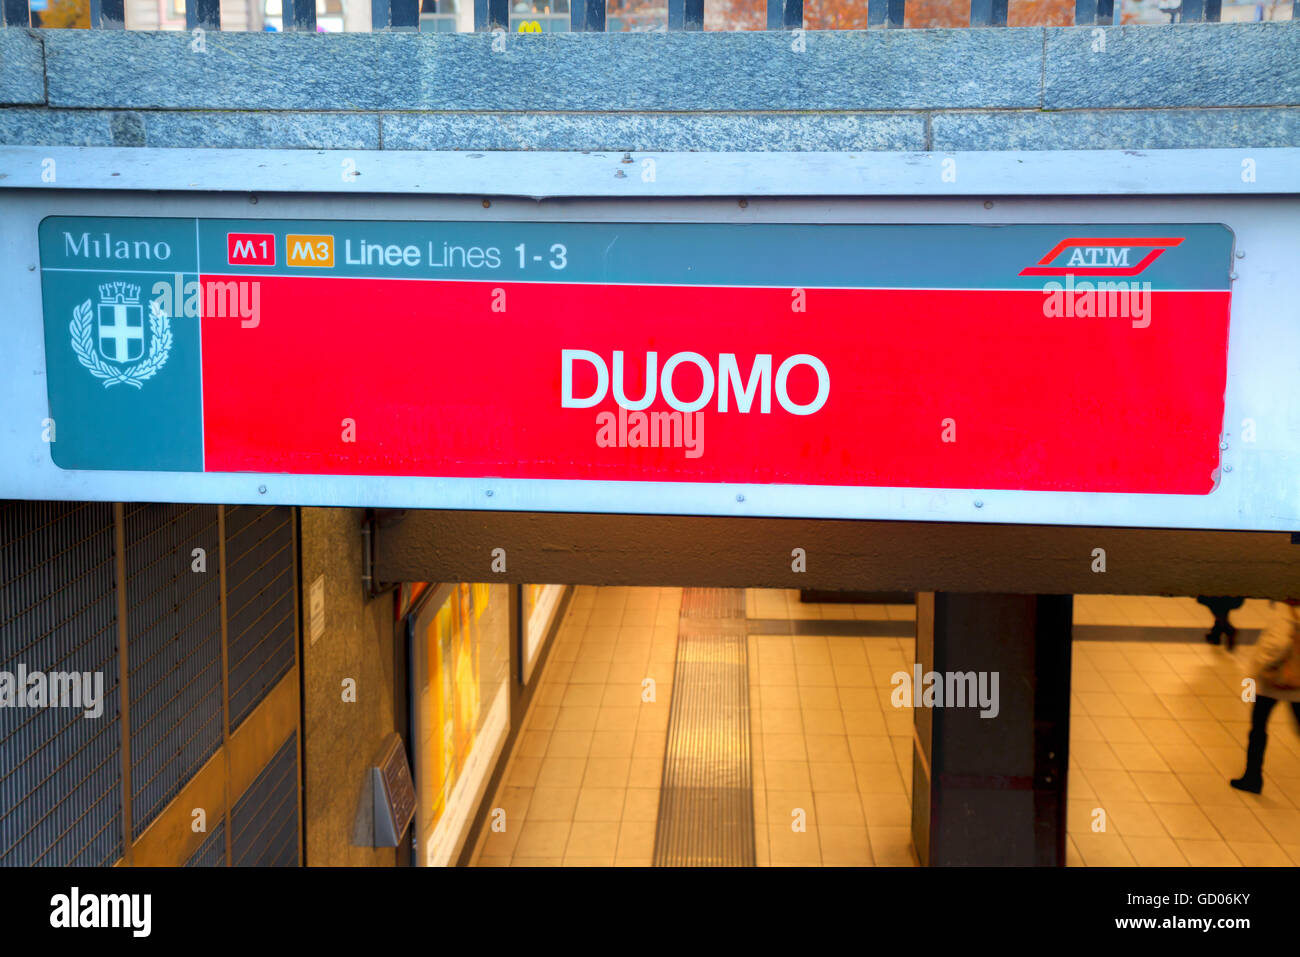 MILAN, ITALY NOVEMBER 24 Duomo subway stop sign on November 24, 2015